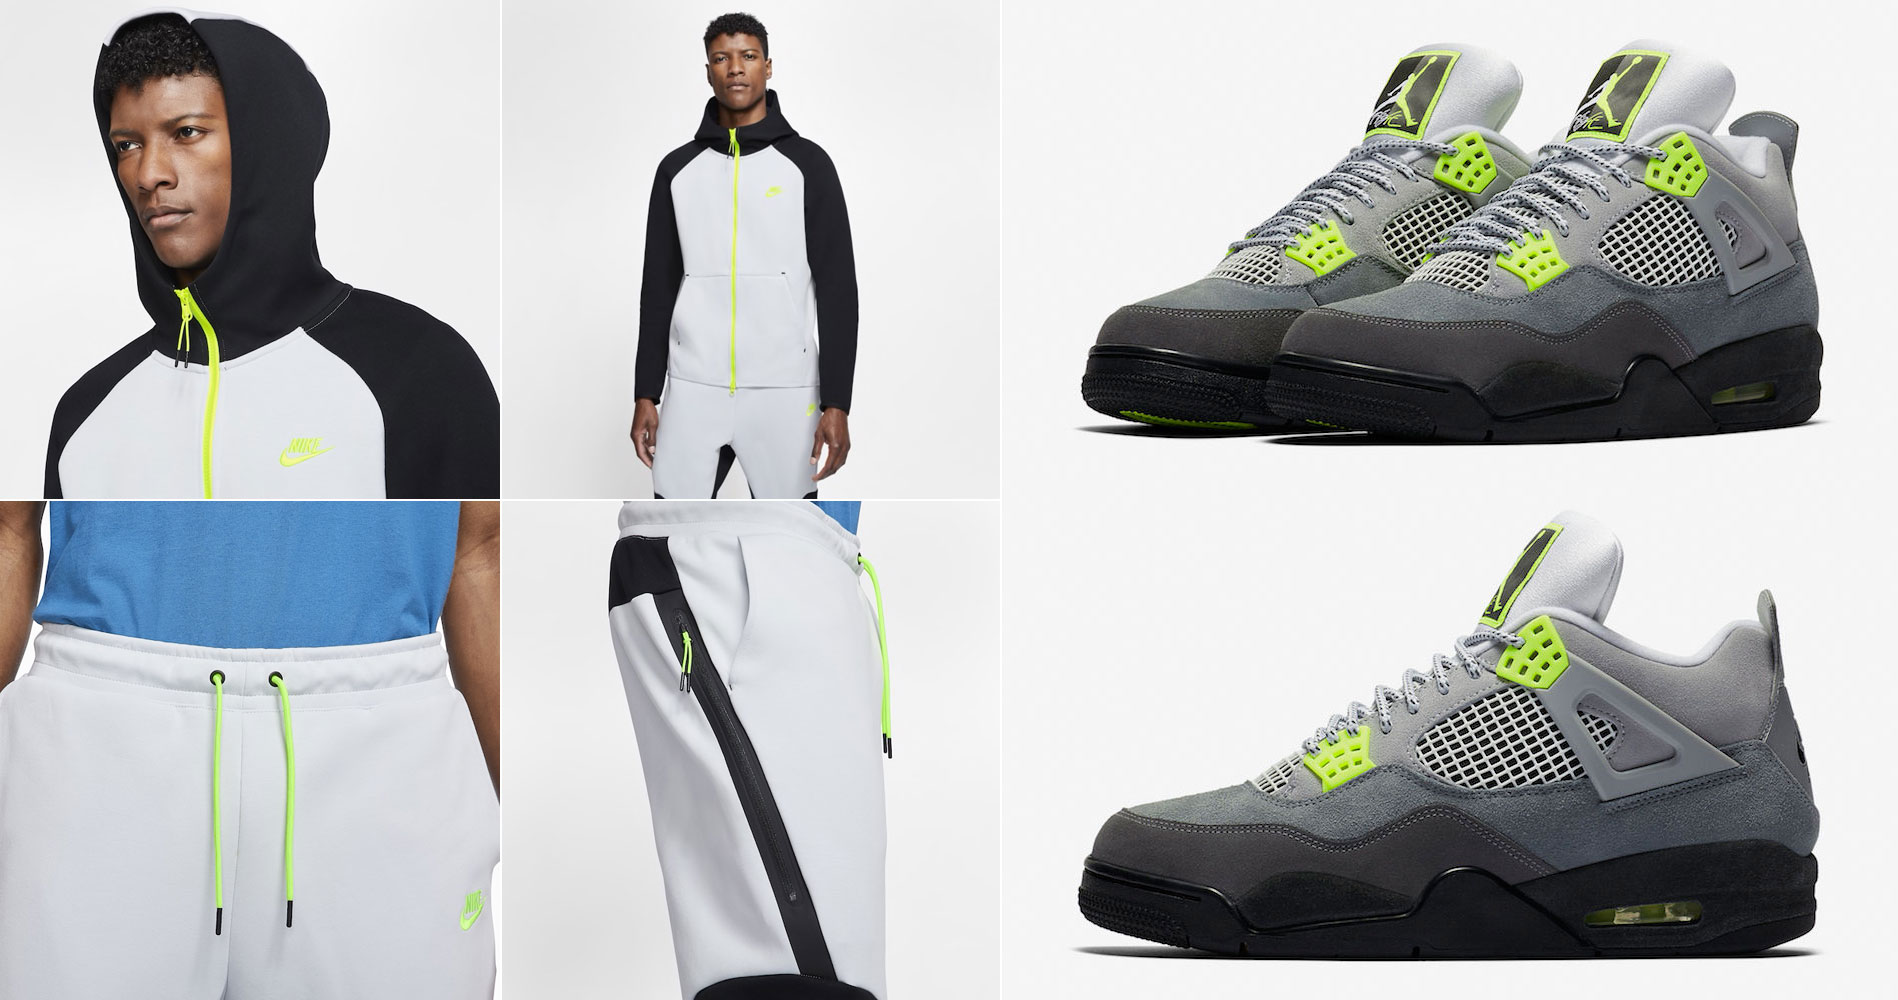 Air Jordan 4 Neon Nike Hoodie and 